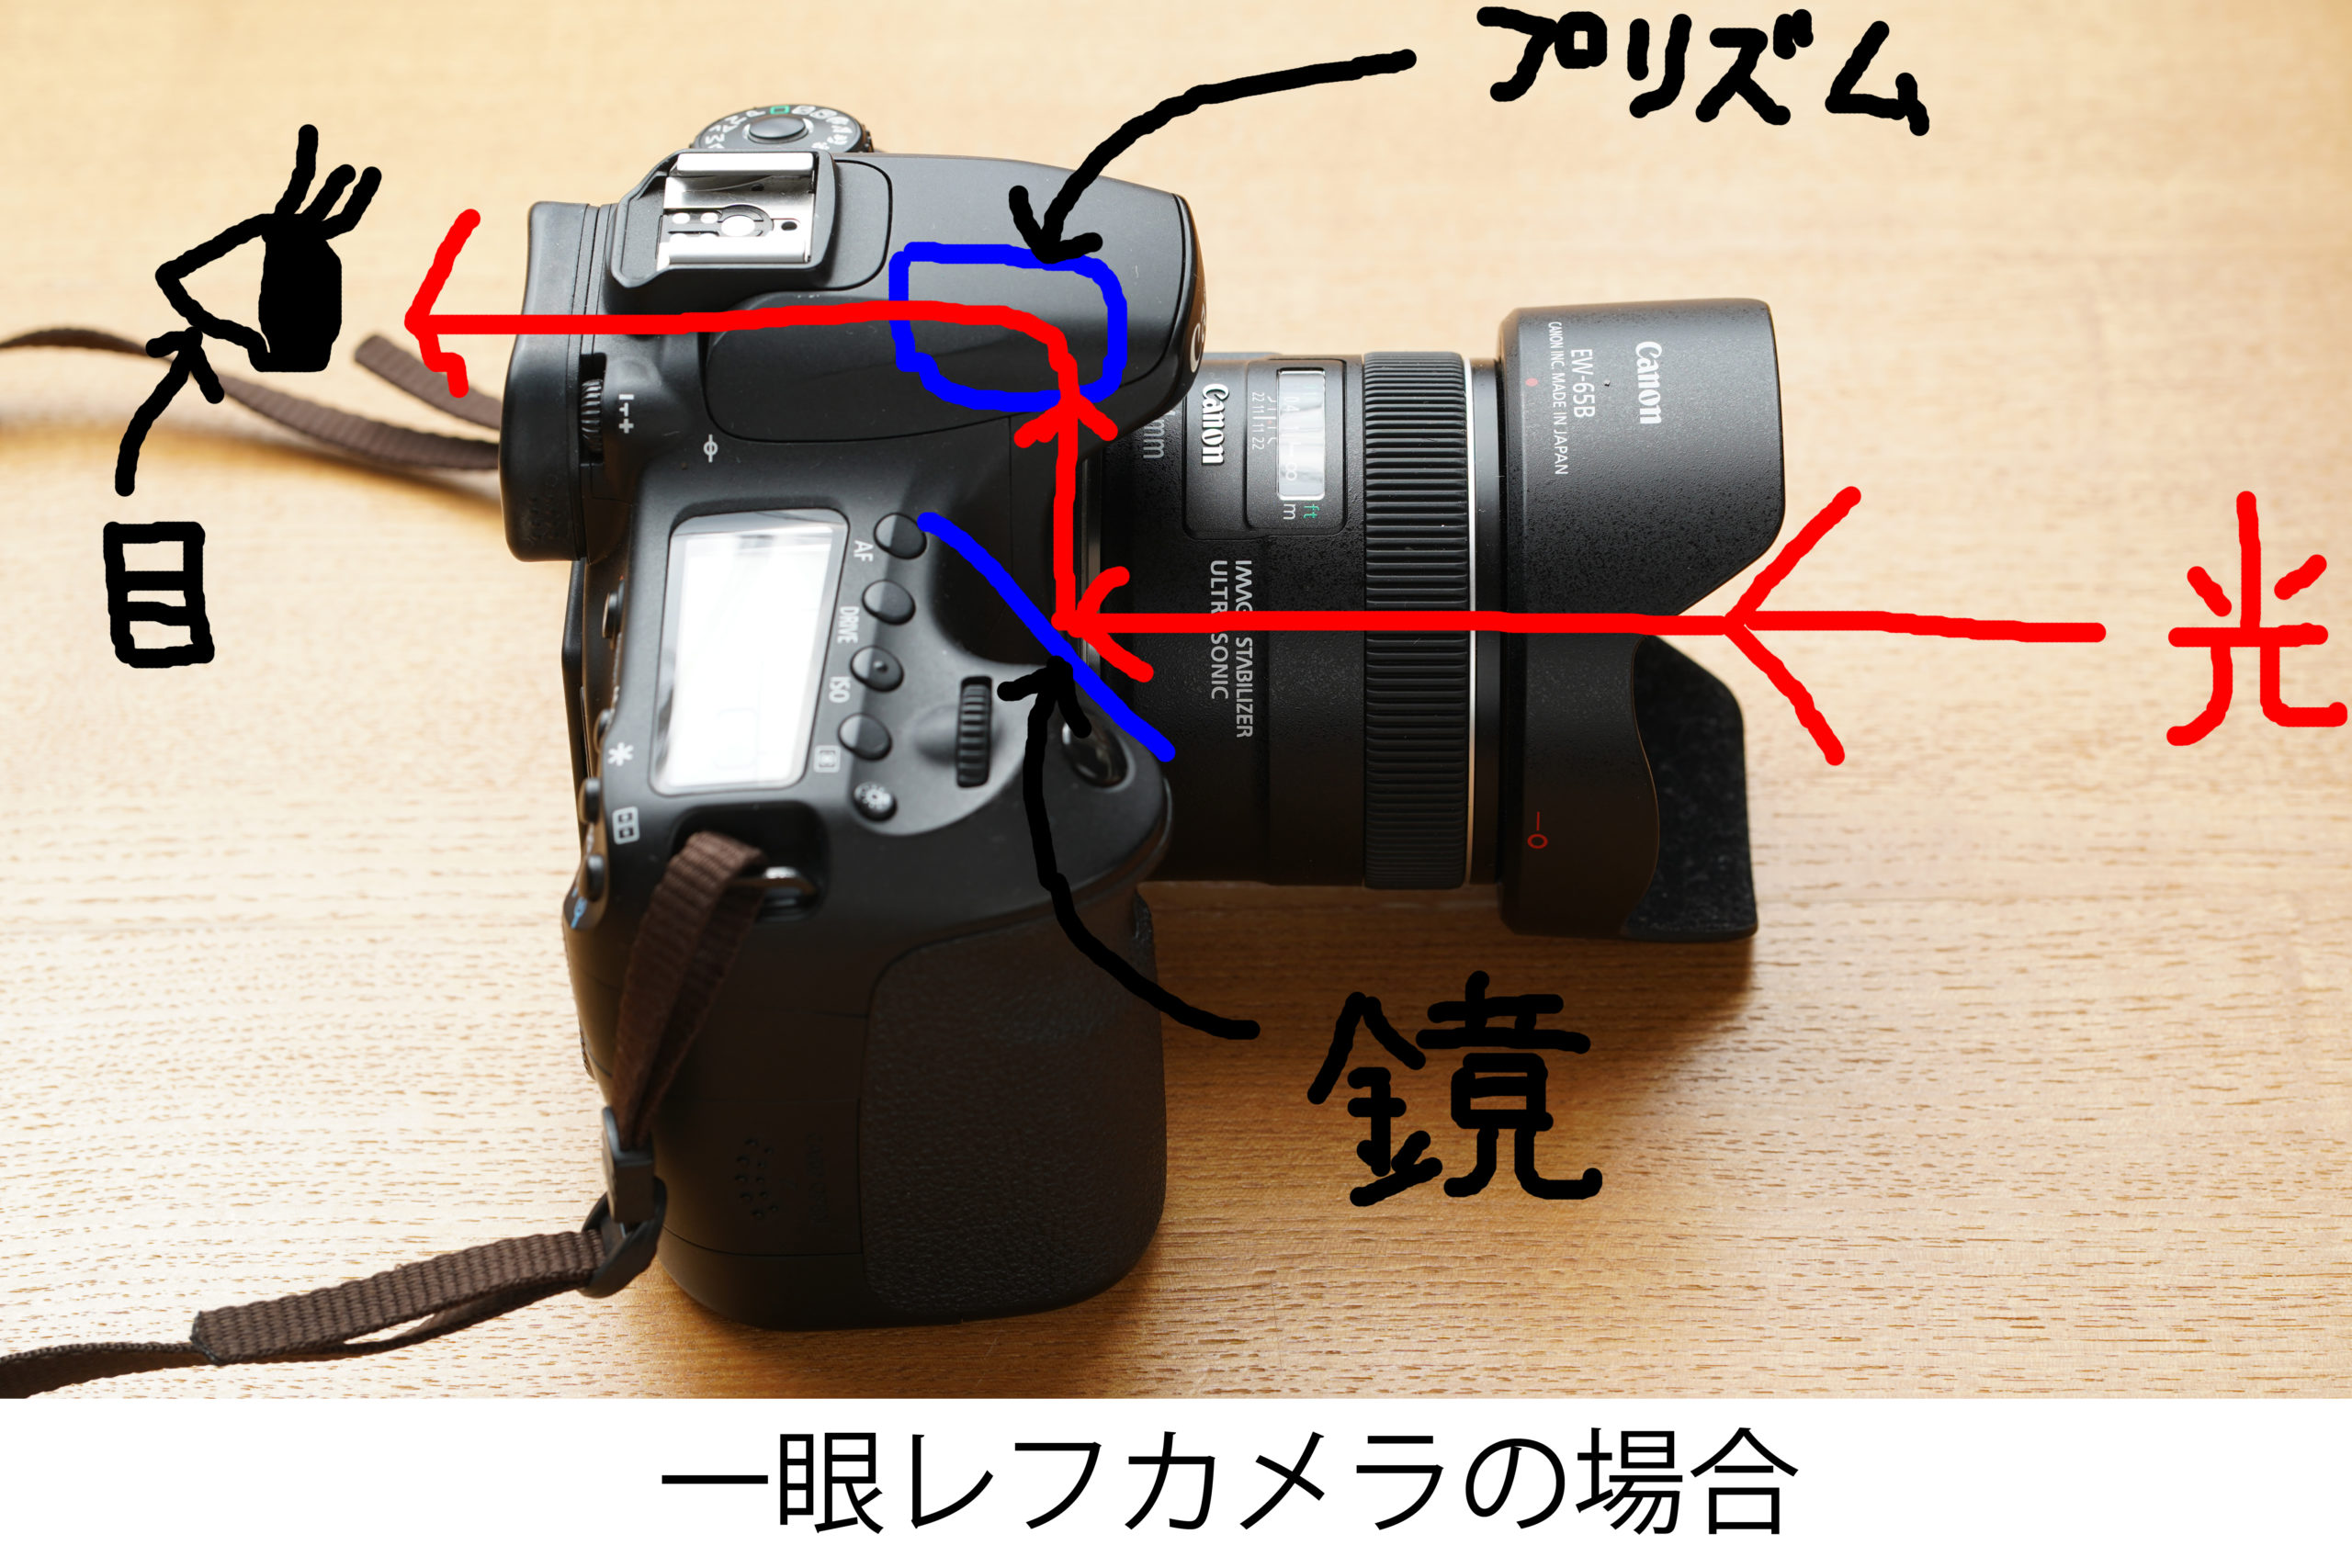 福岡の出張撮影サービス「RYO PHOTO（リョウフォト）」の出張カメラマン山口が福岡で出張撮影したカメラの写真